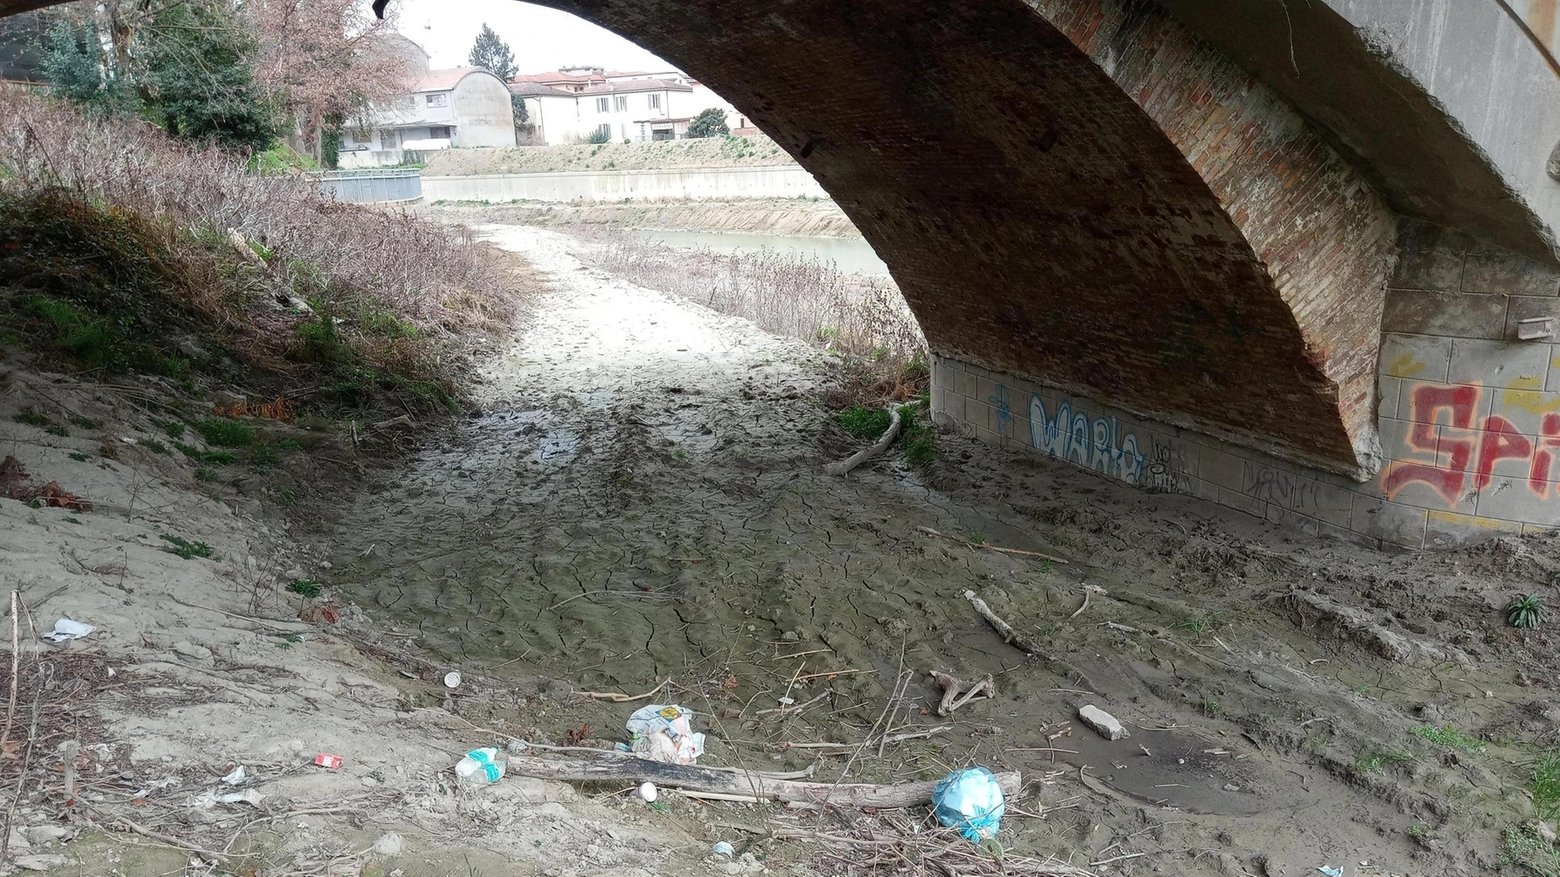 Ripuliti fossi e fiume. Volontari anti-spazzatura: tonnellate di rifiuti abbandonati